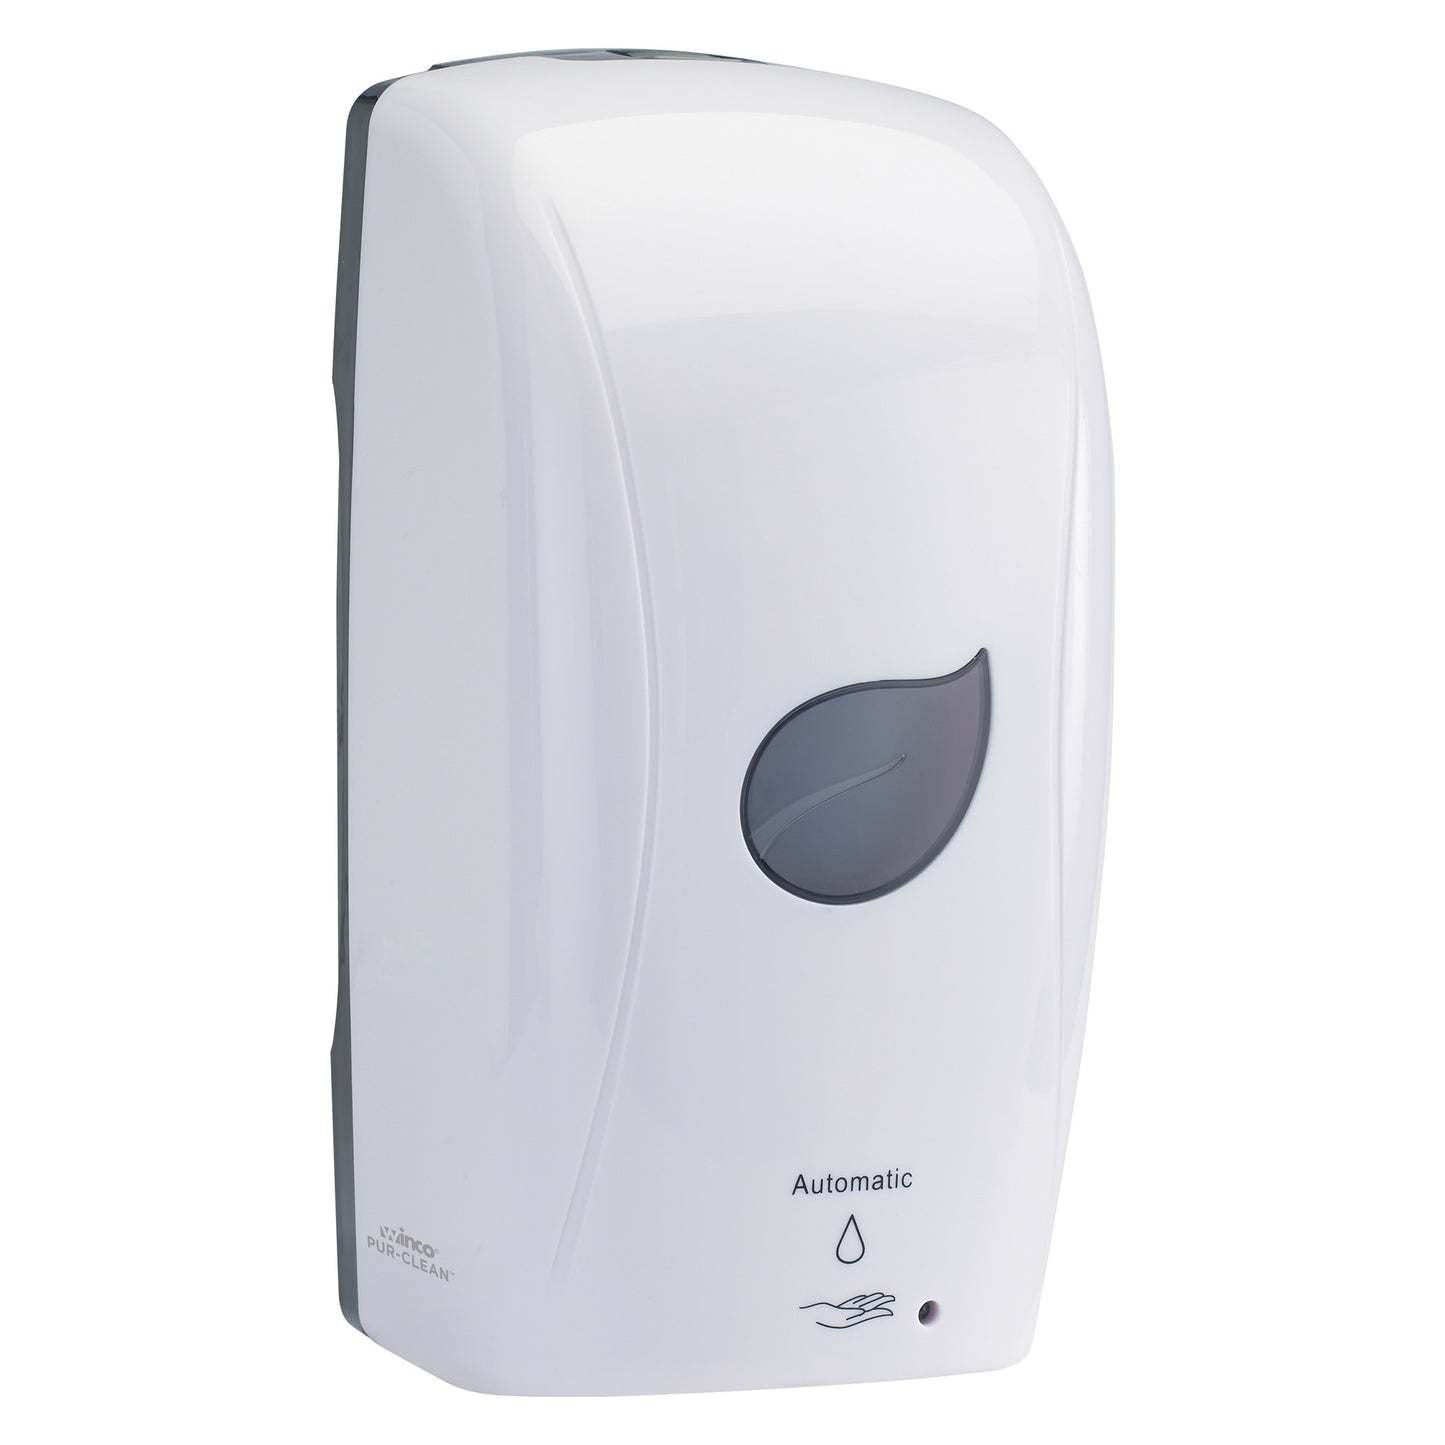 SDAF-1W - Pur-Clean Automatic Soap Dispenser, Foam - White